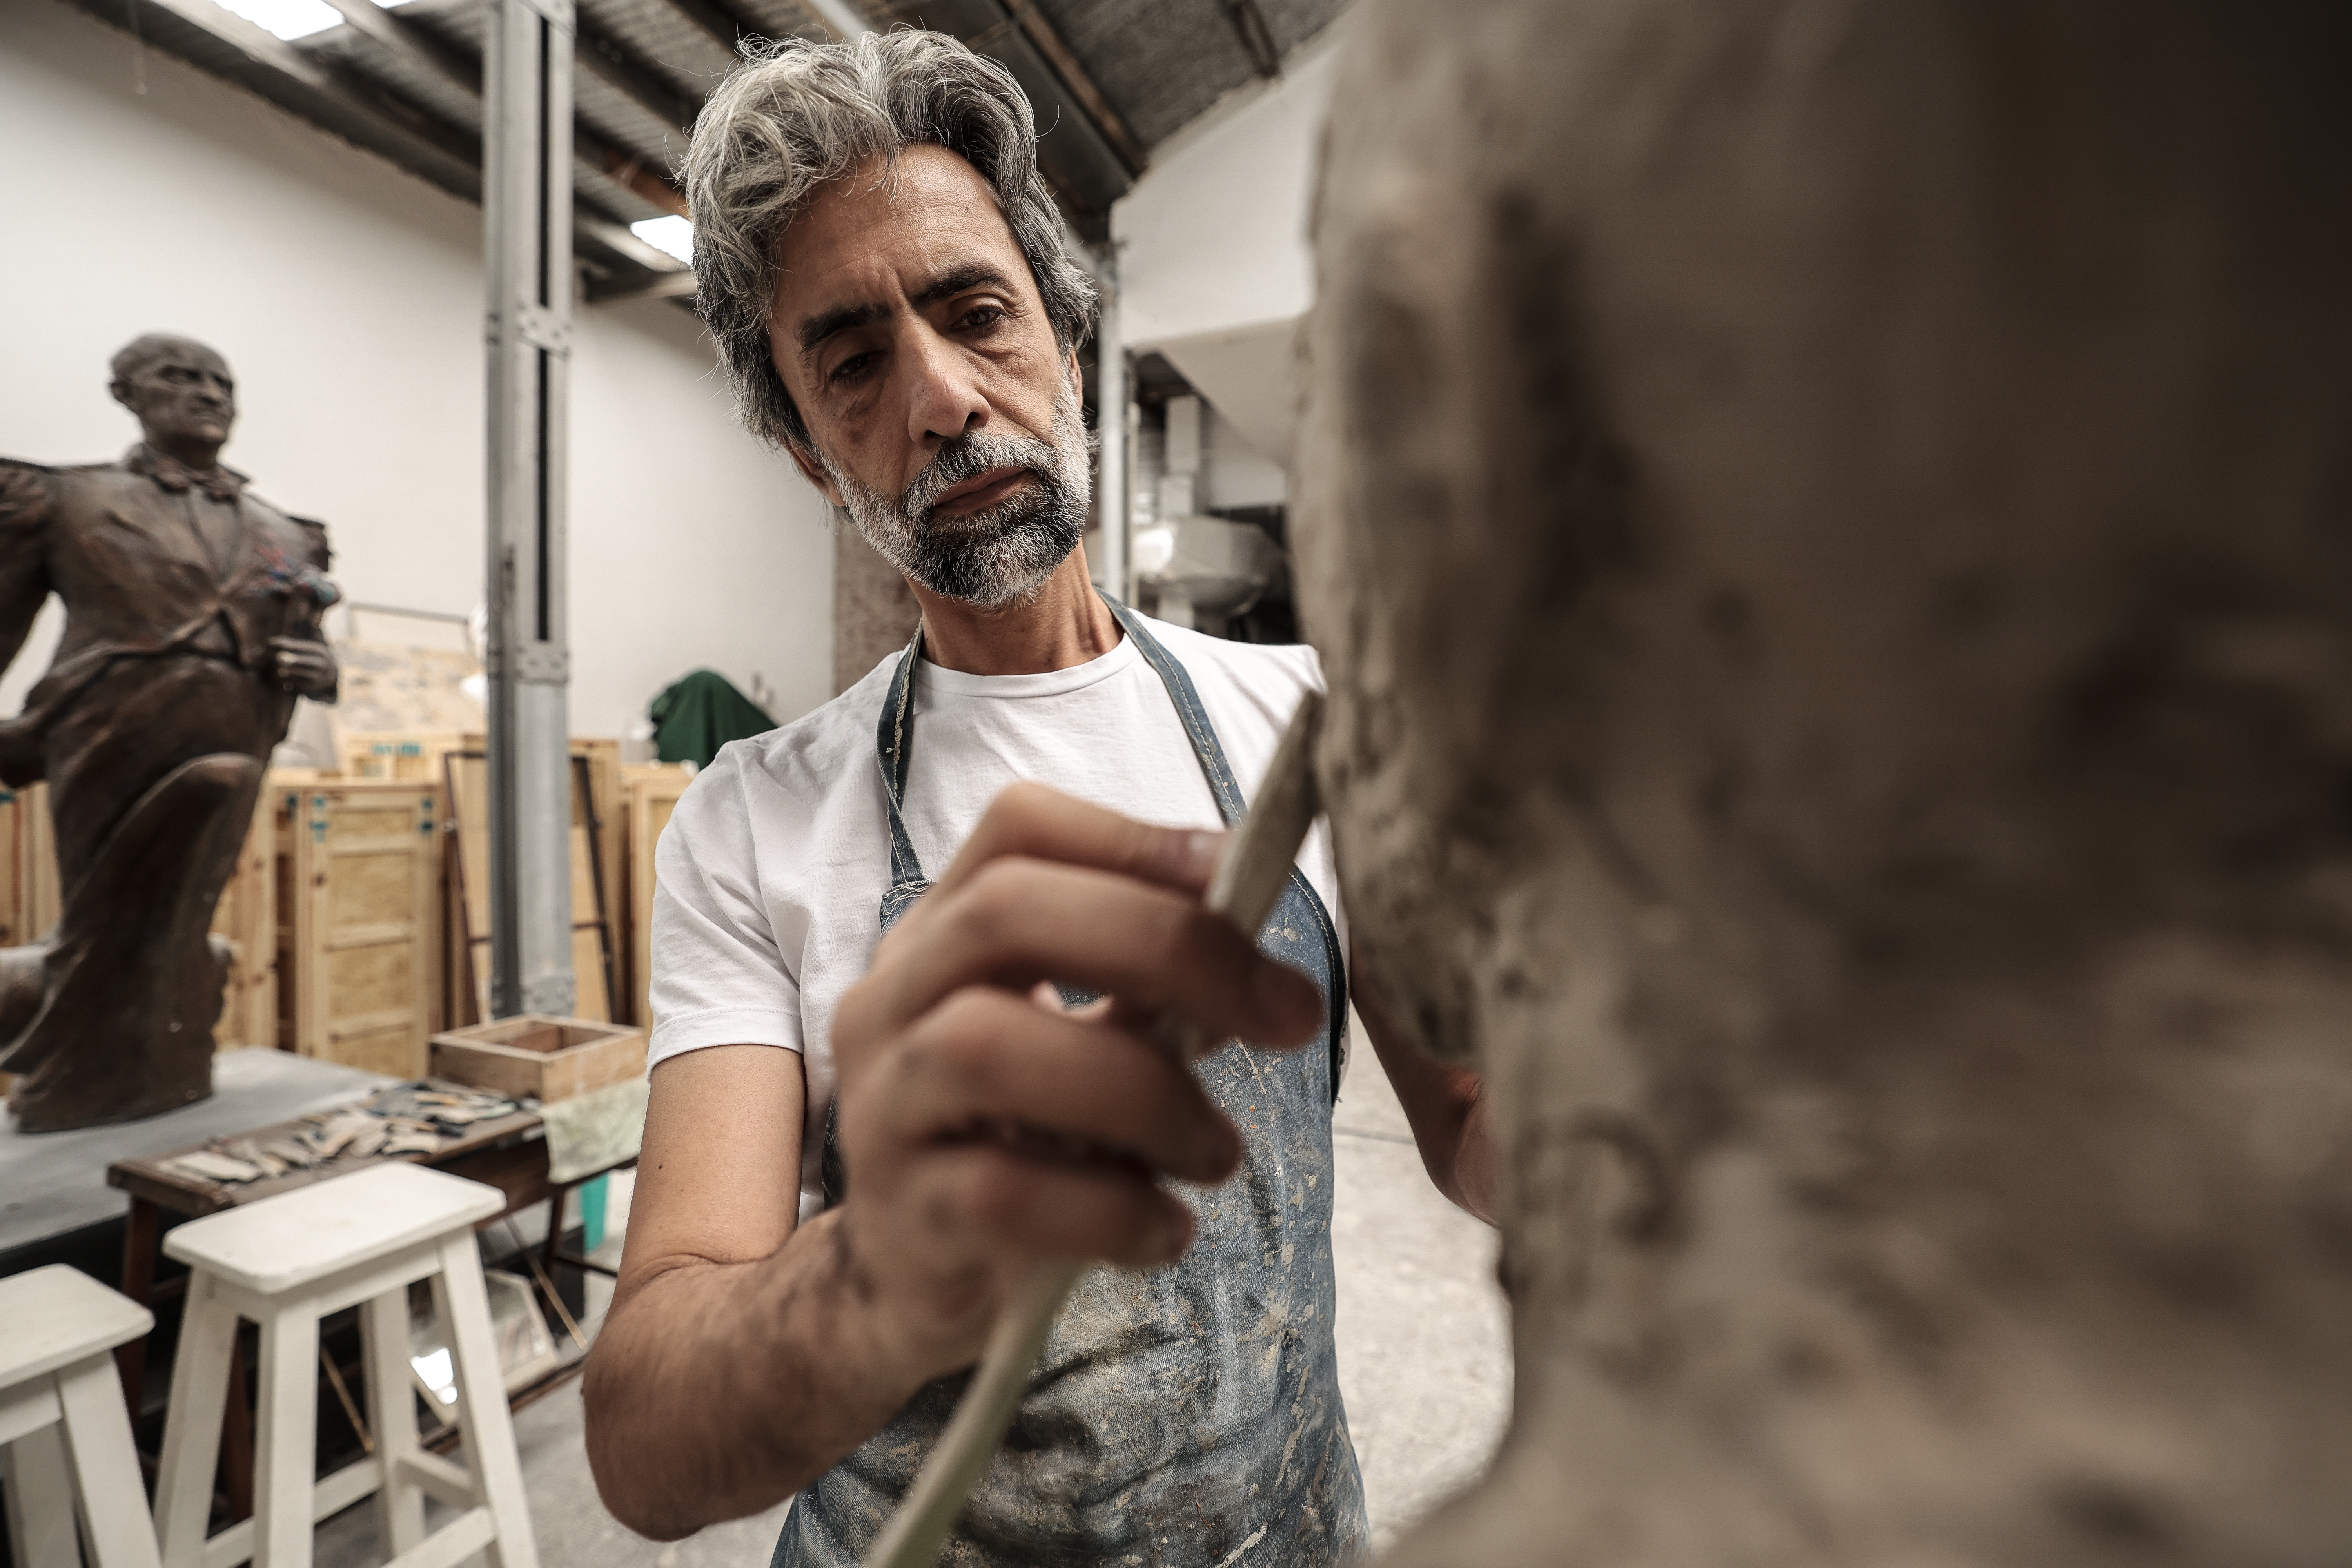 El escultor que 'moldeó' el "carácter" de Maradona, Messi y Evita